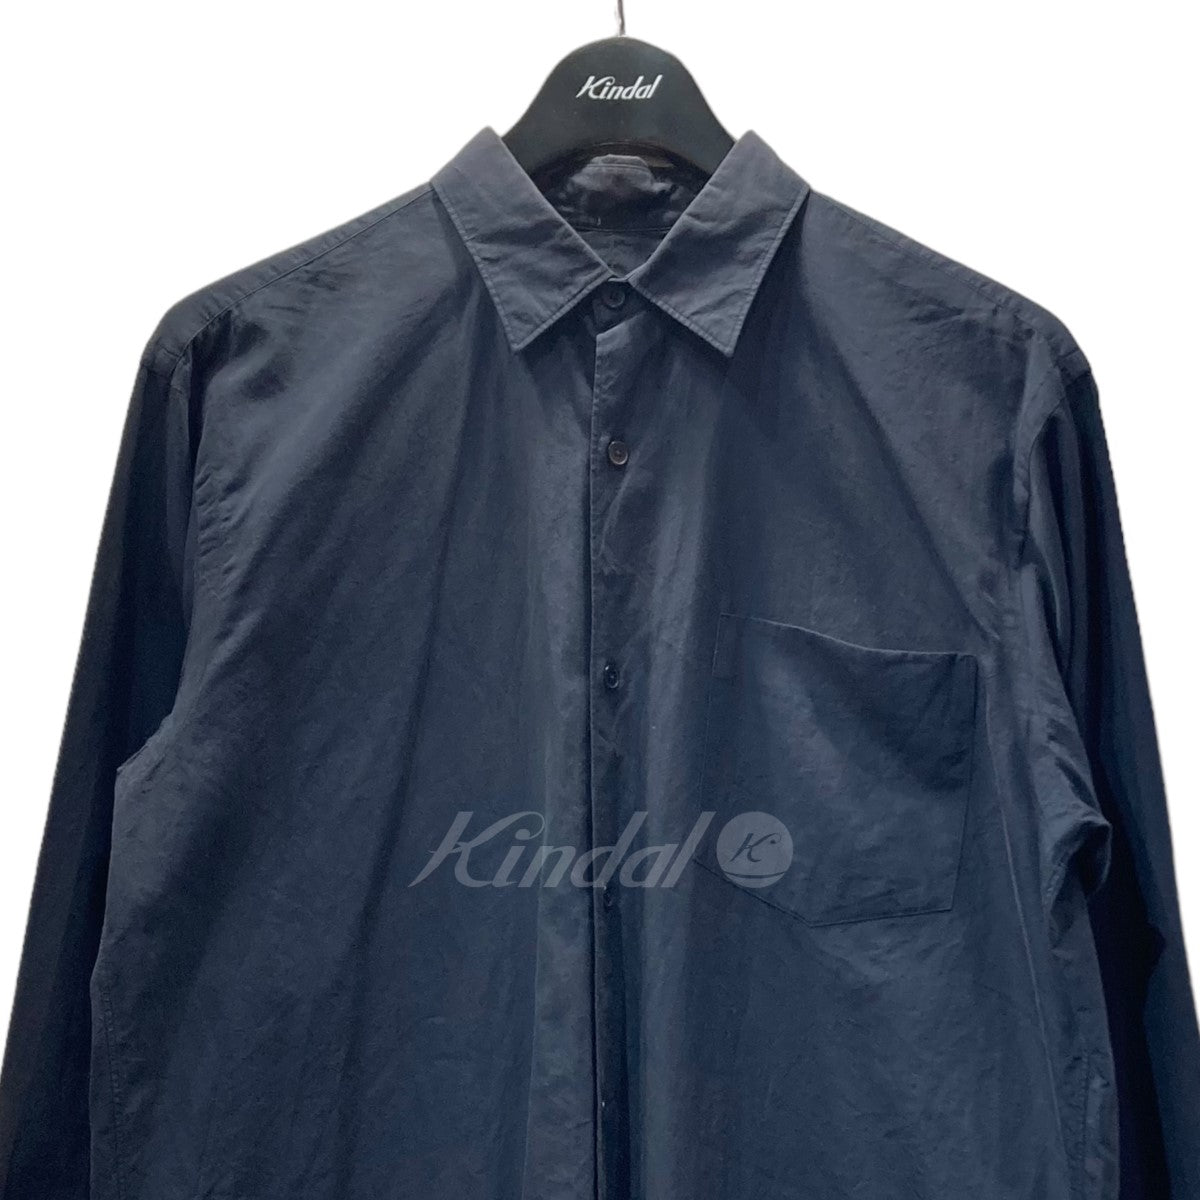 国内製造comoli 本店限定 khadi shirt ネイビー サイズ2 1回着用 トップス